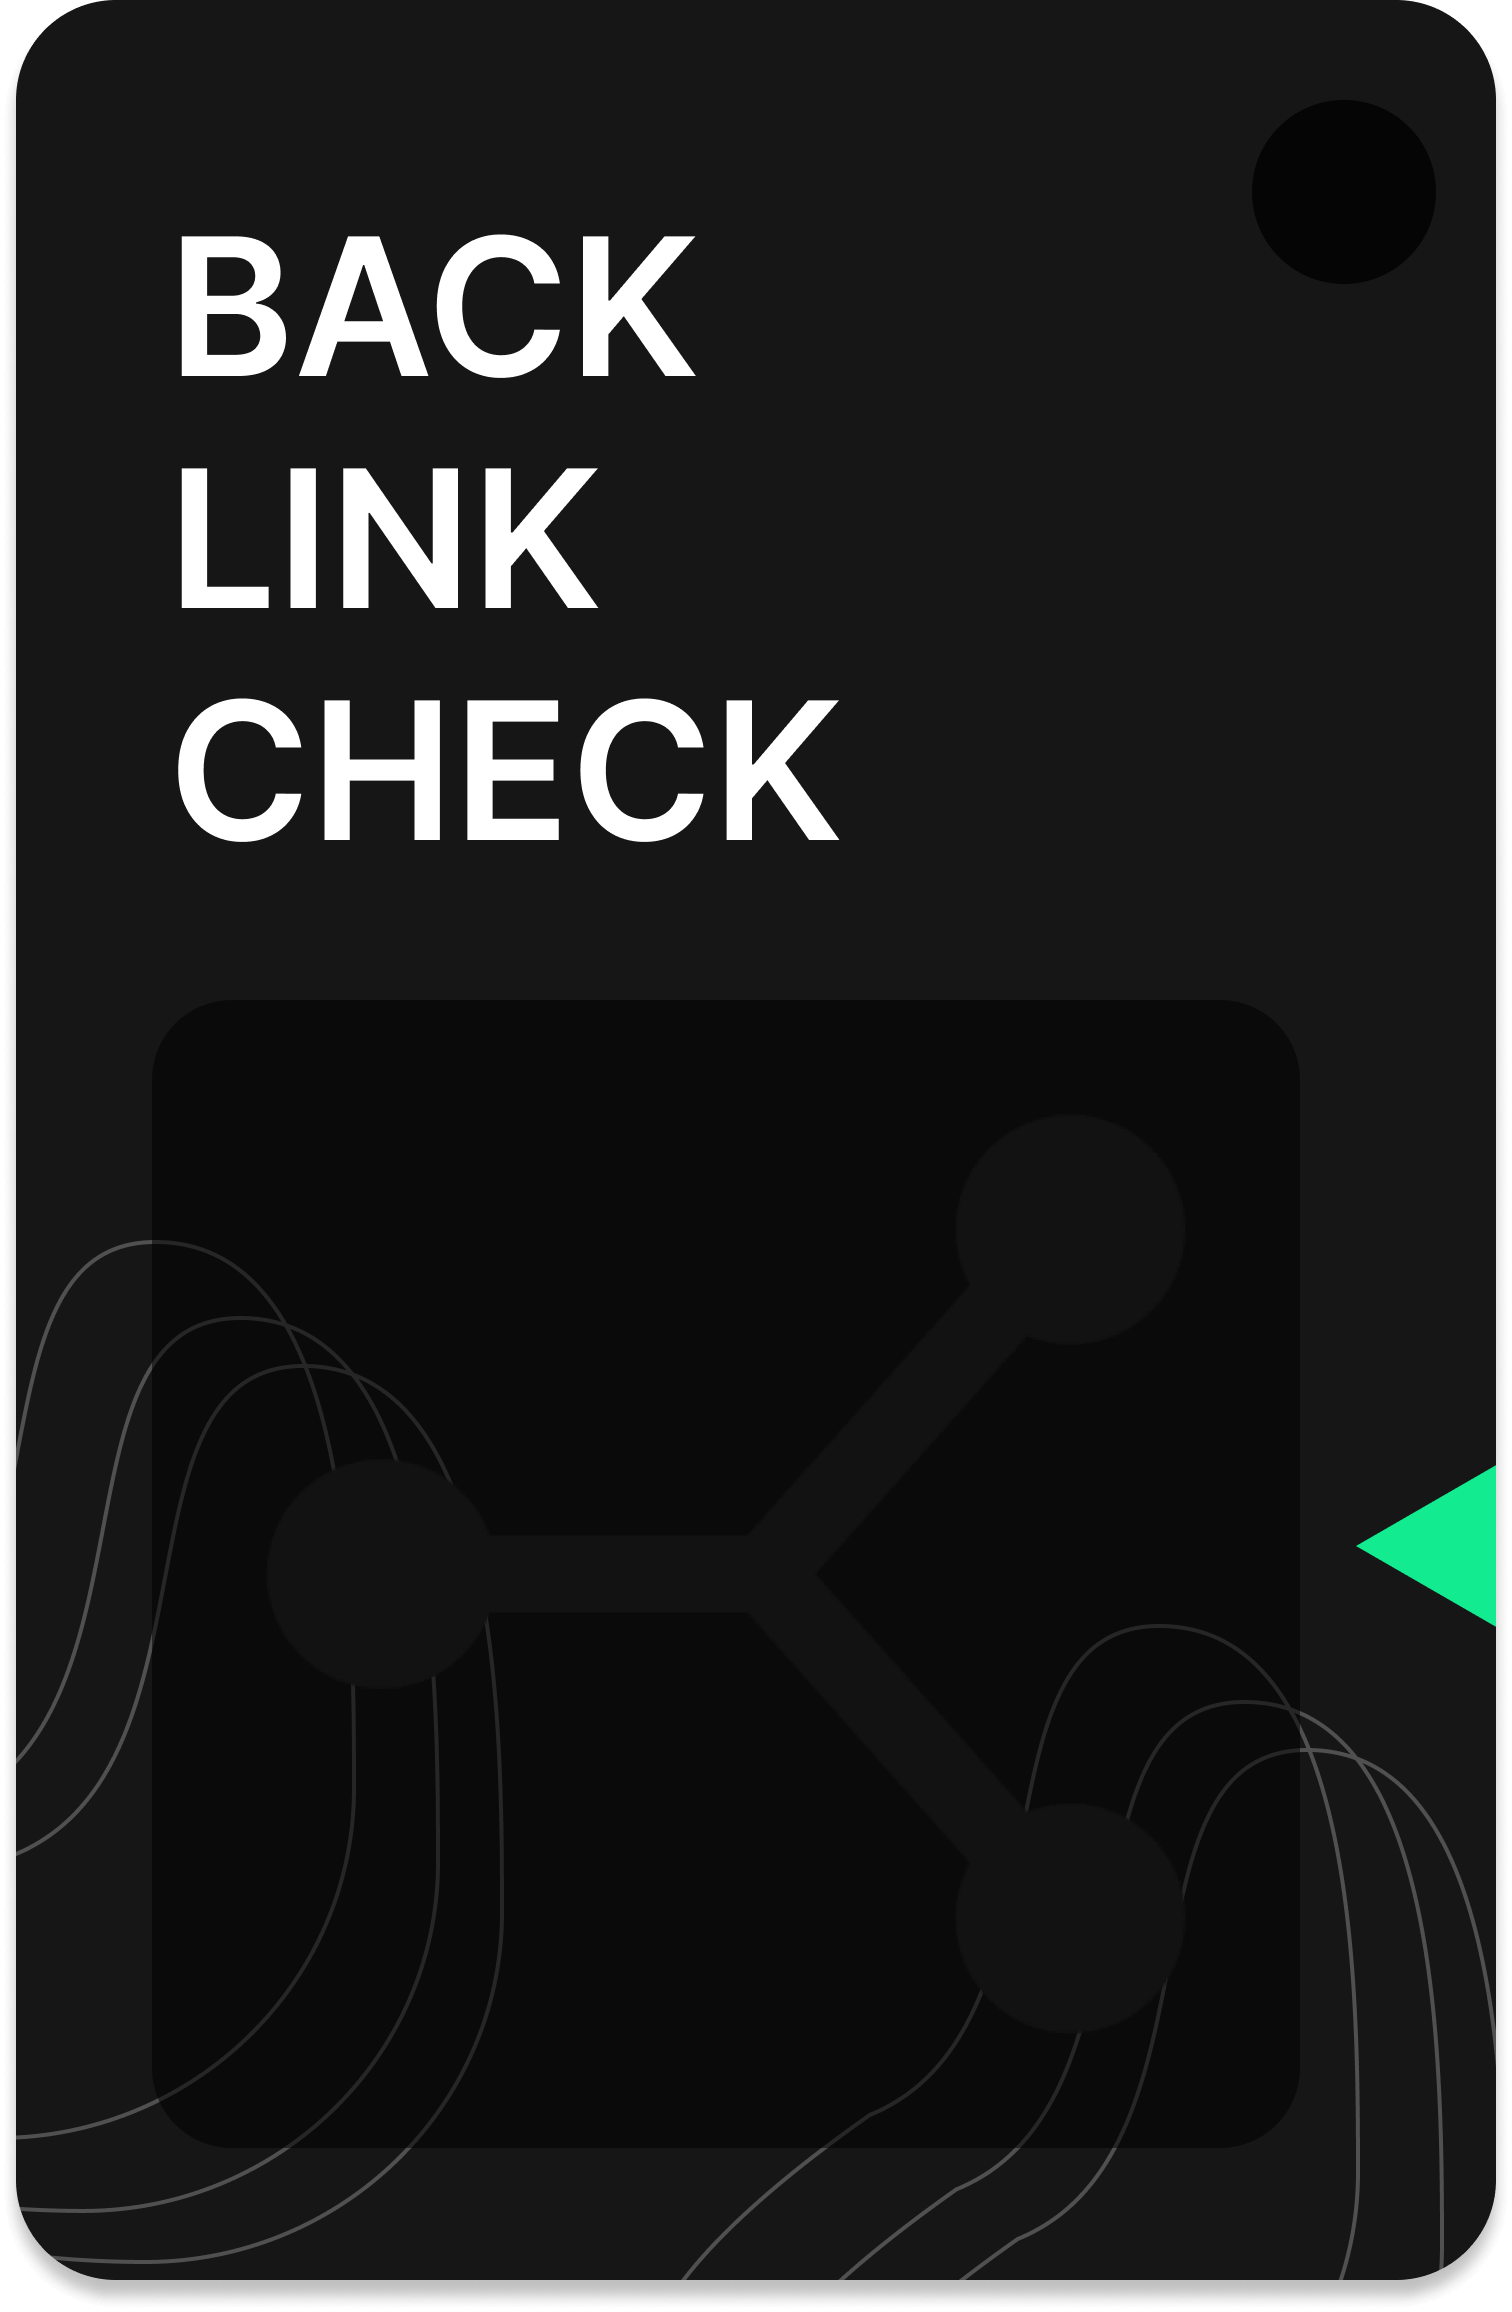 backlink check tool image